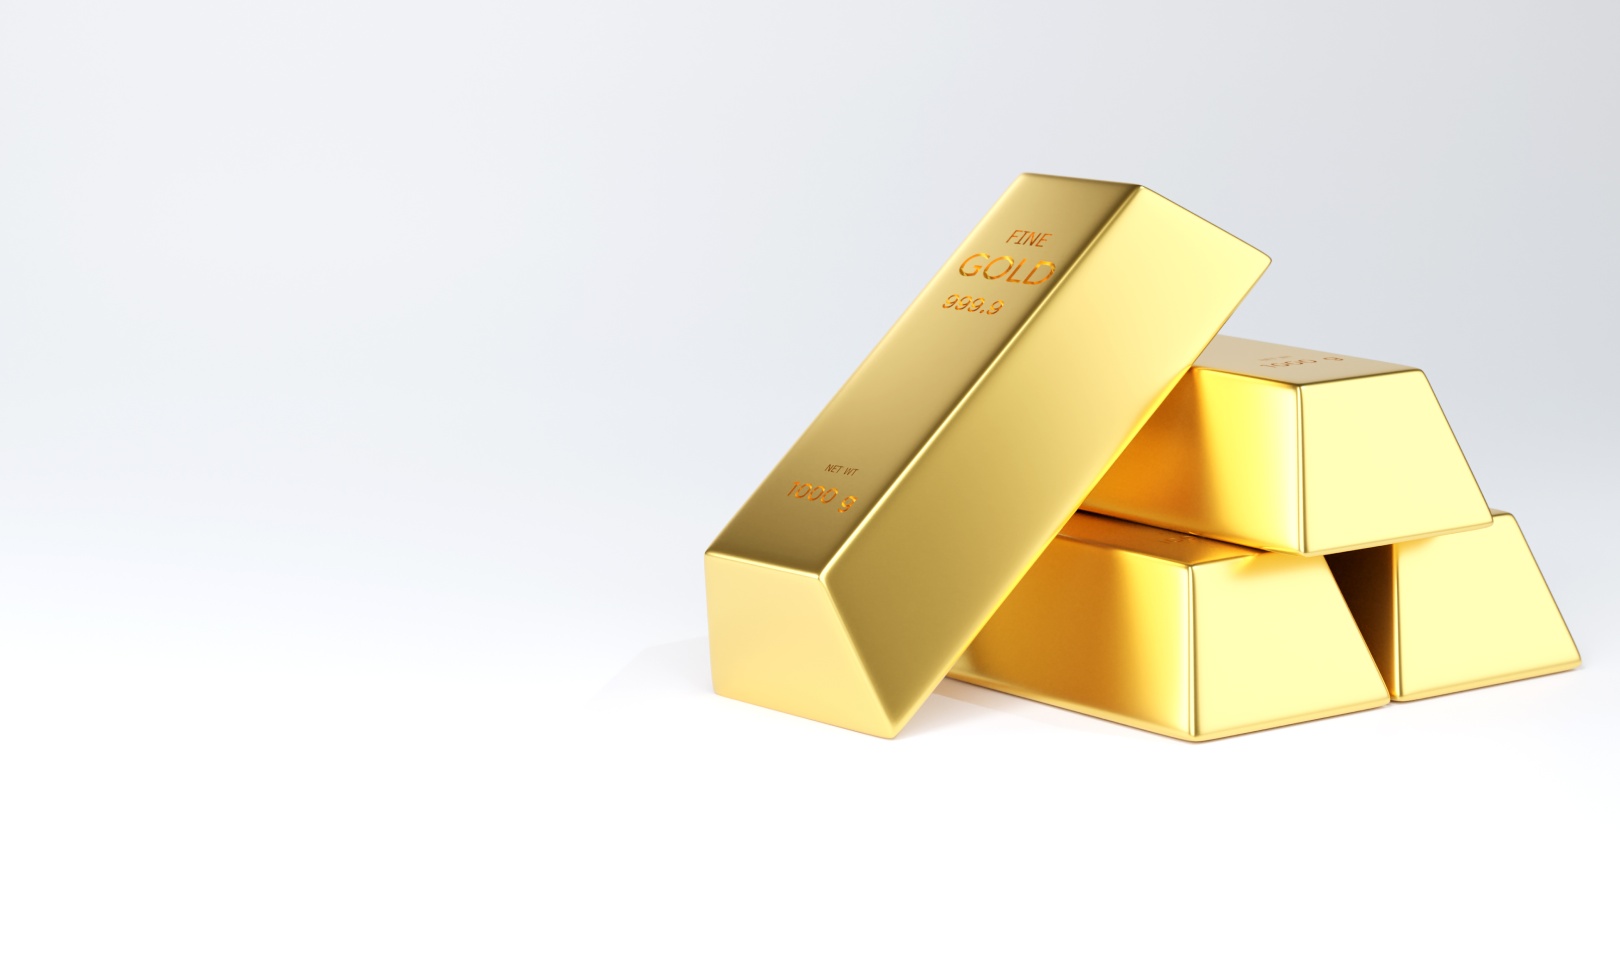 Zlato - Gdje uložiti novac? Otkrijte prednosti i rizike najpopularnijih investicijskih opcija